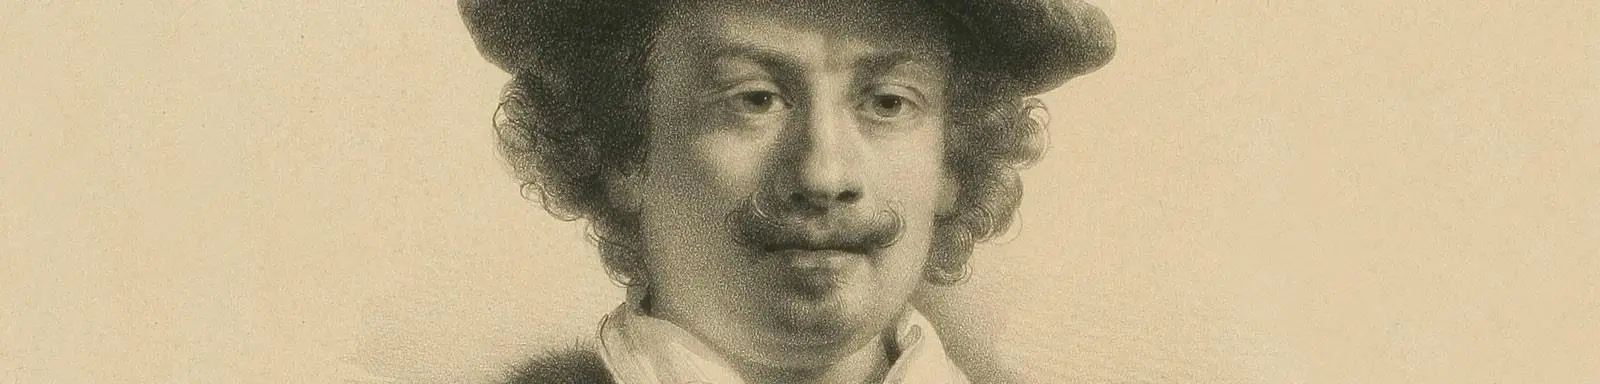 rembrandt en el museo del prado - Dónde se encuentran las pinturas de Rembrandt